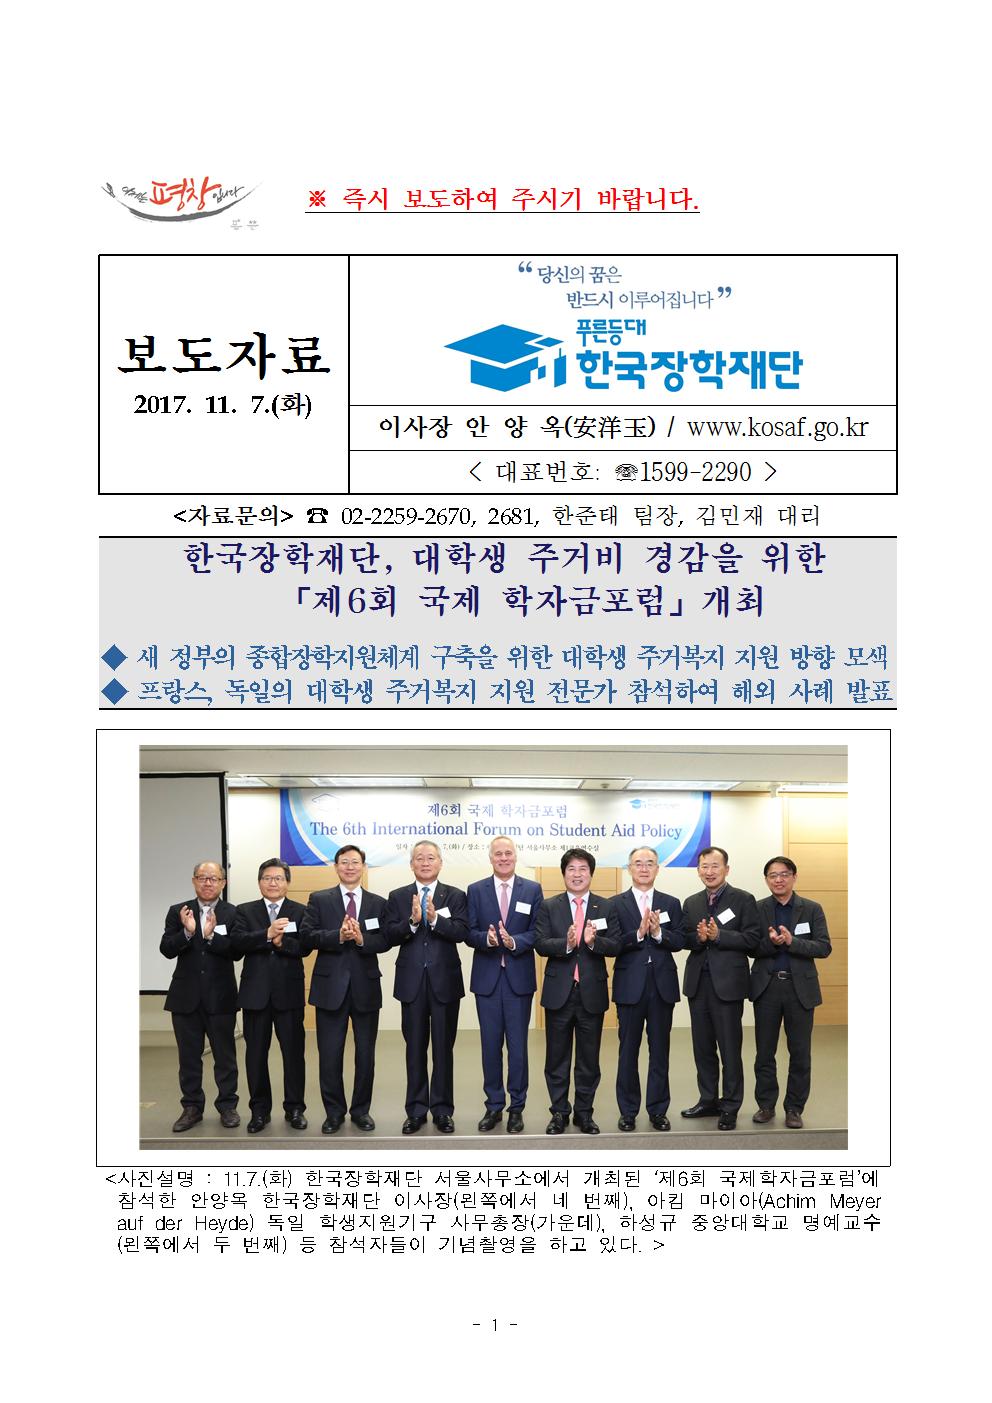 11-07(화)[보도자료]한국장학재단, 제6회 국제학자금포럼 개최관련 이미지입니다. 자세한 내용은 아래를 참고하세요.